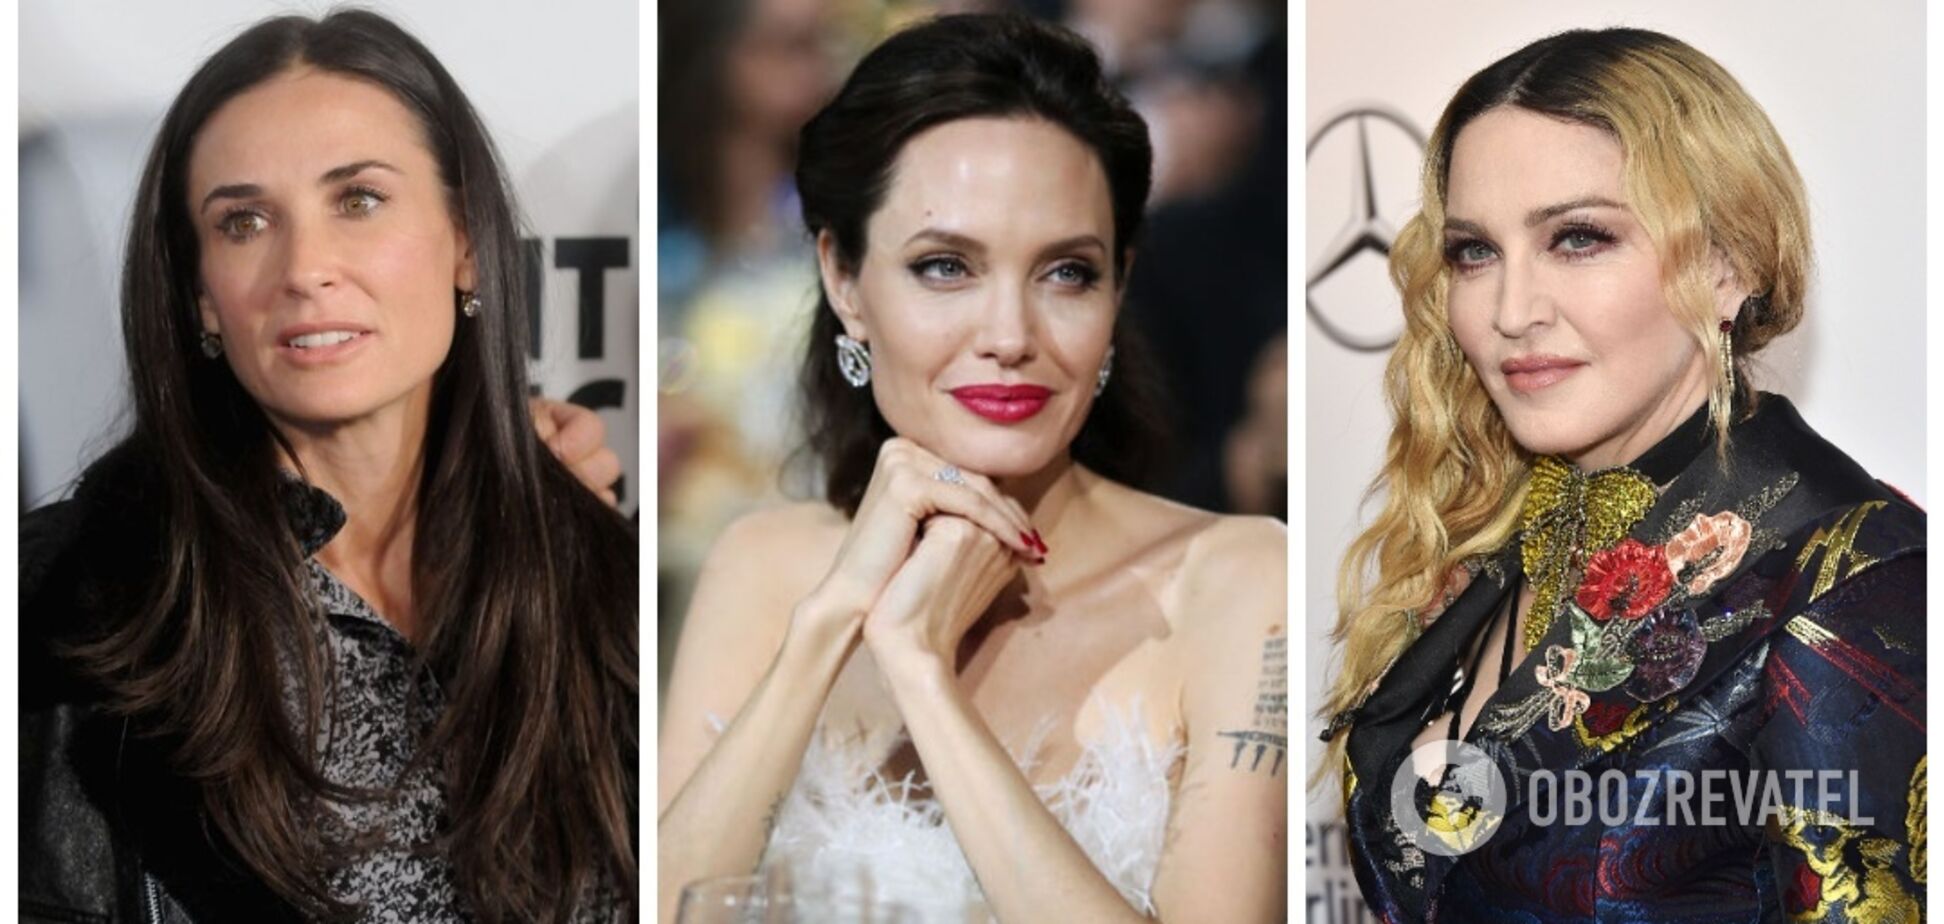 Деми Мур, Мадонна и другие звезды, изменившие форму подбородка. Фото до и после